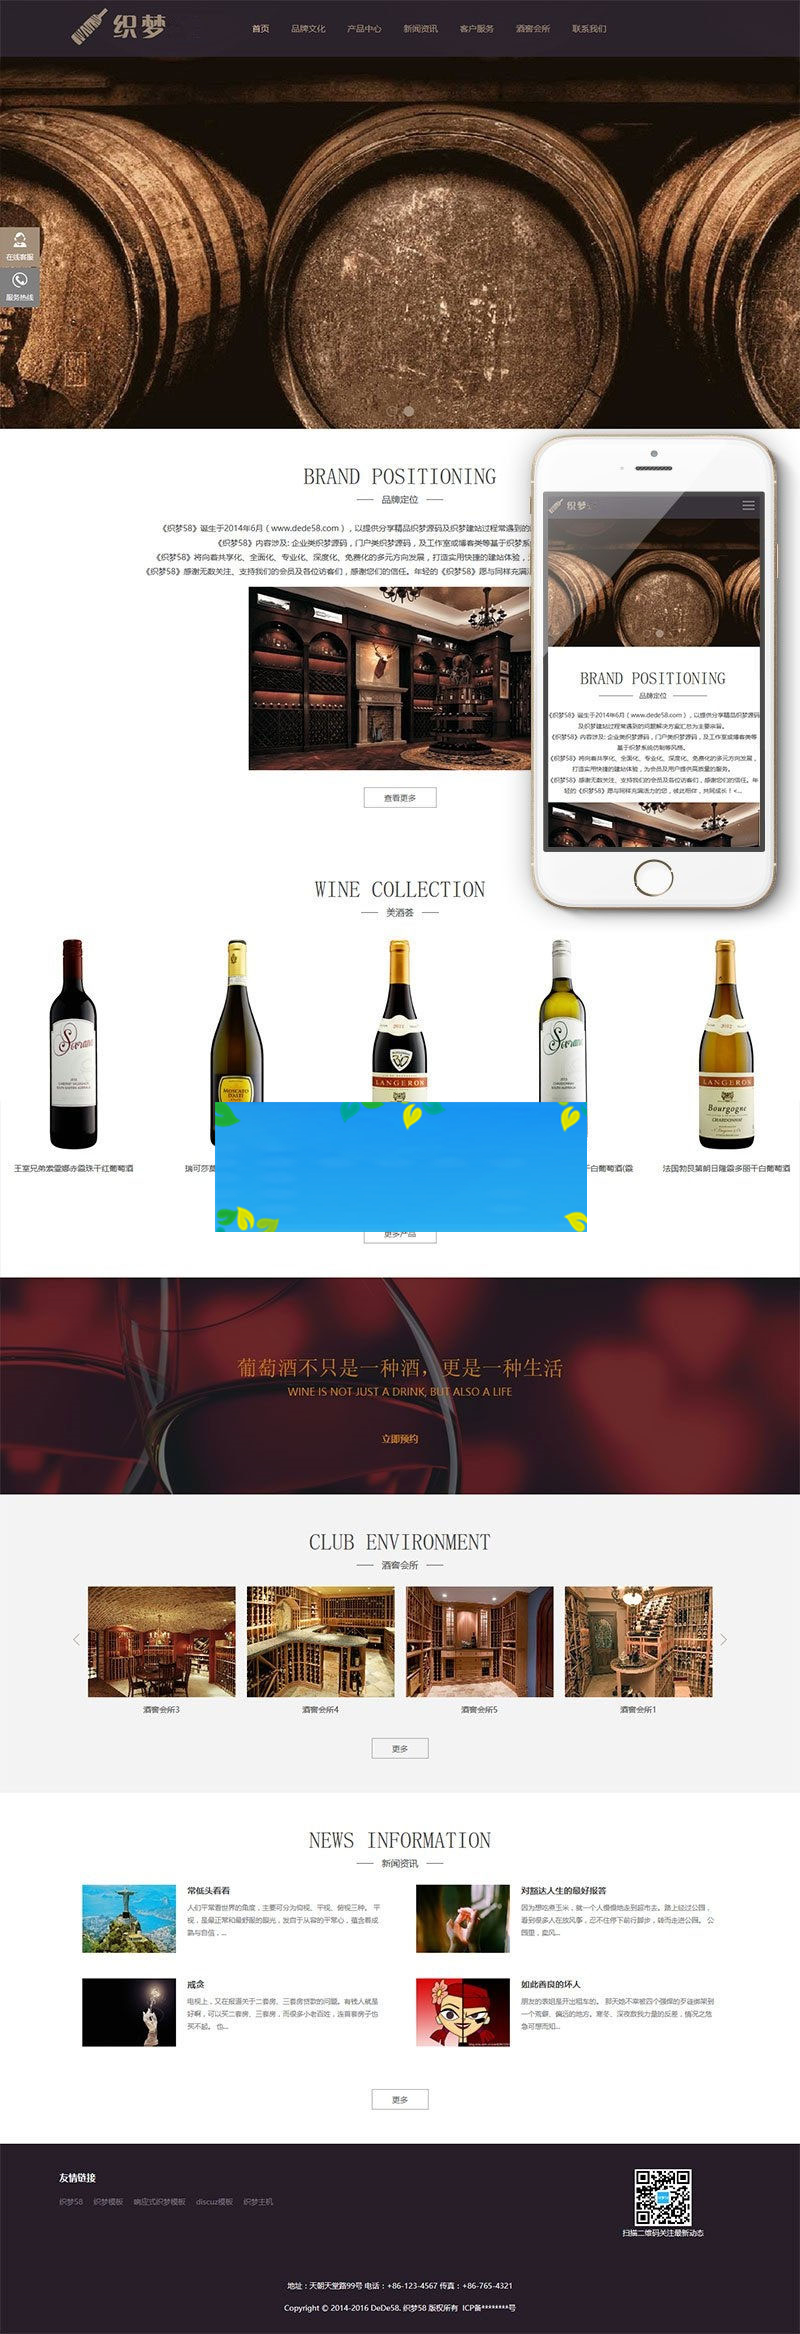 织梦dedecms响应式高端藏酒酒业酒窖网站模板(自适应手机移动端)